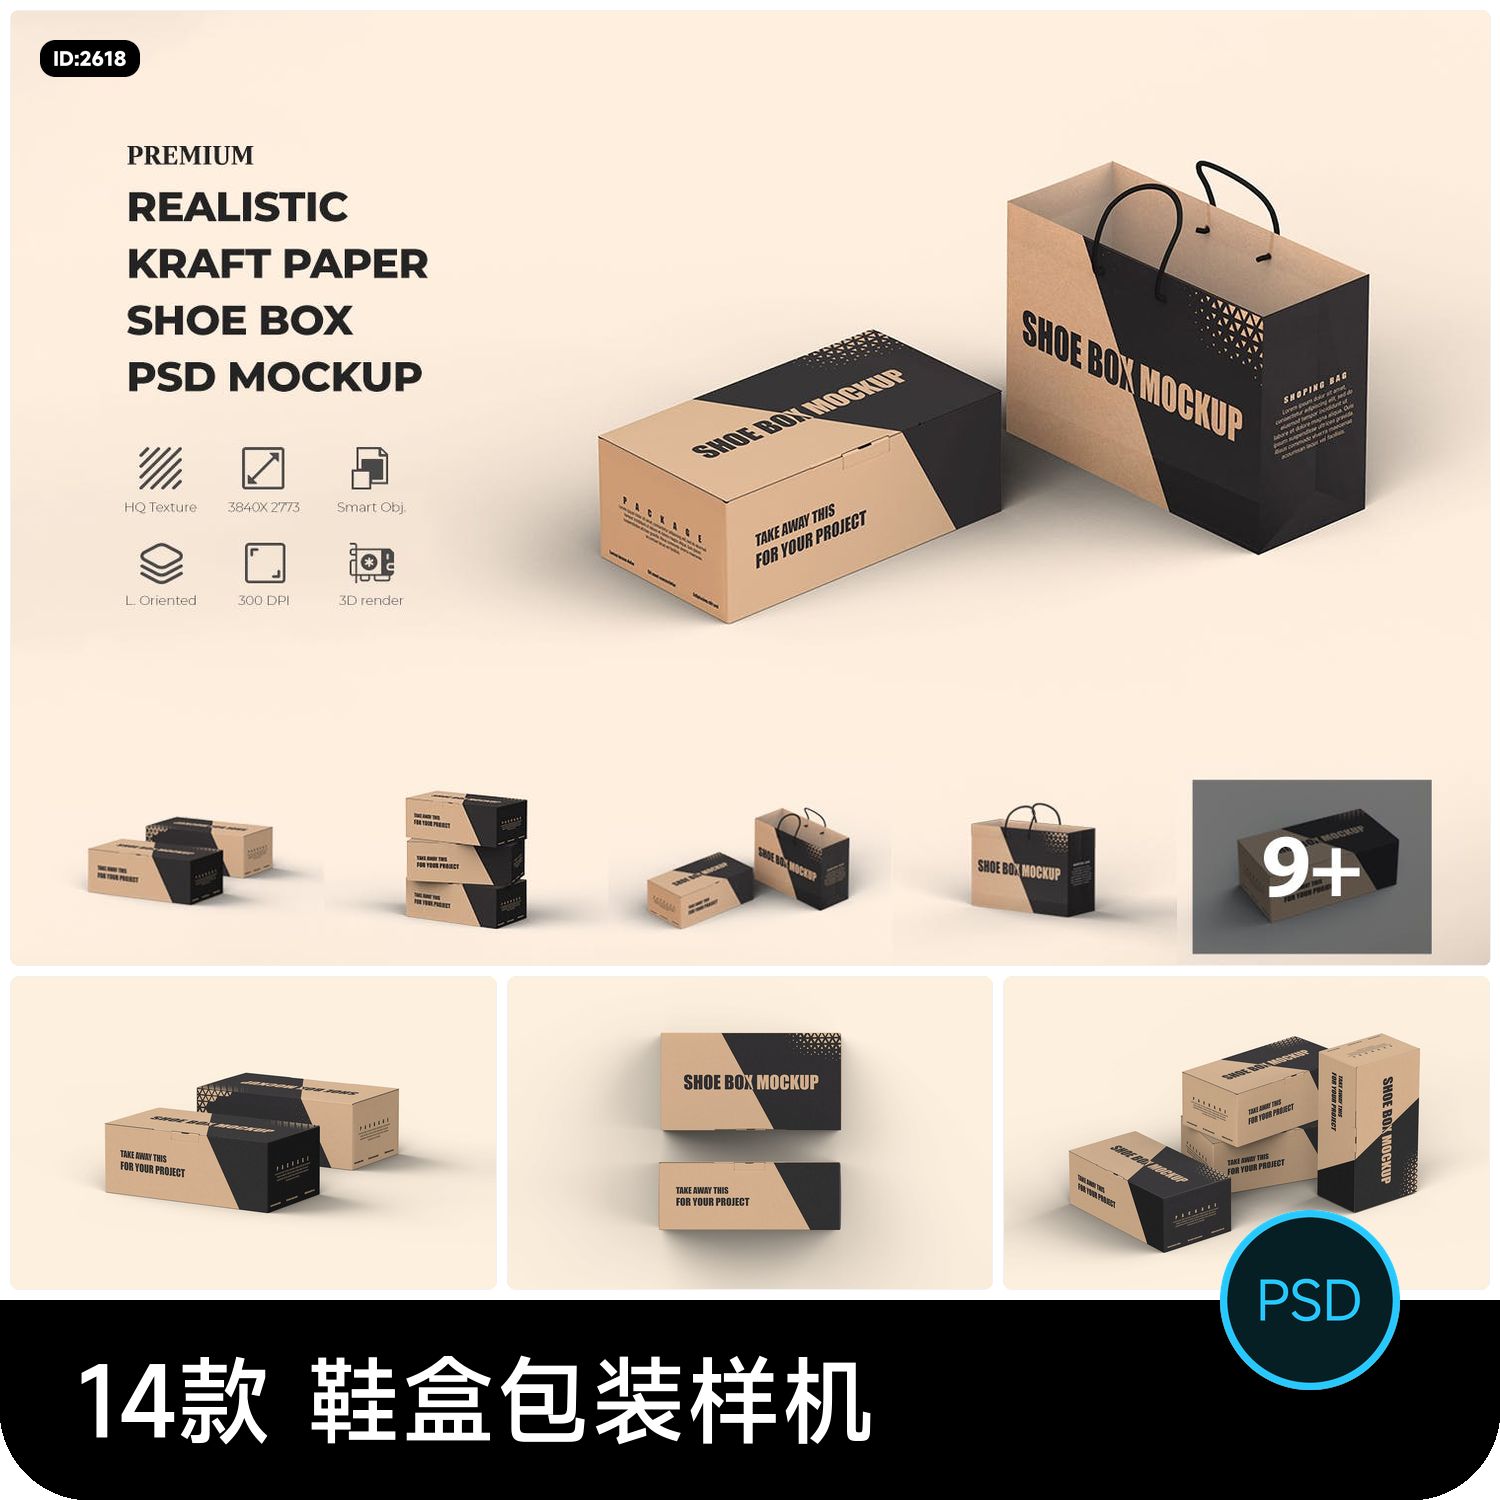 鞋盒包装盒手提袋logo印花设计vi提案展示效果贴图样机psd素材